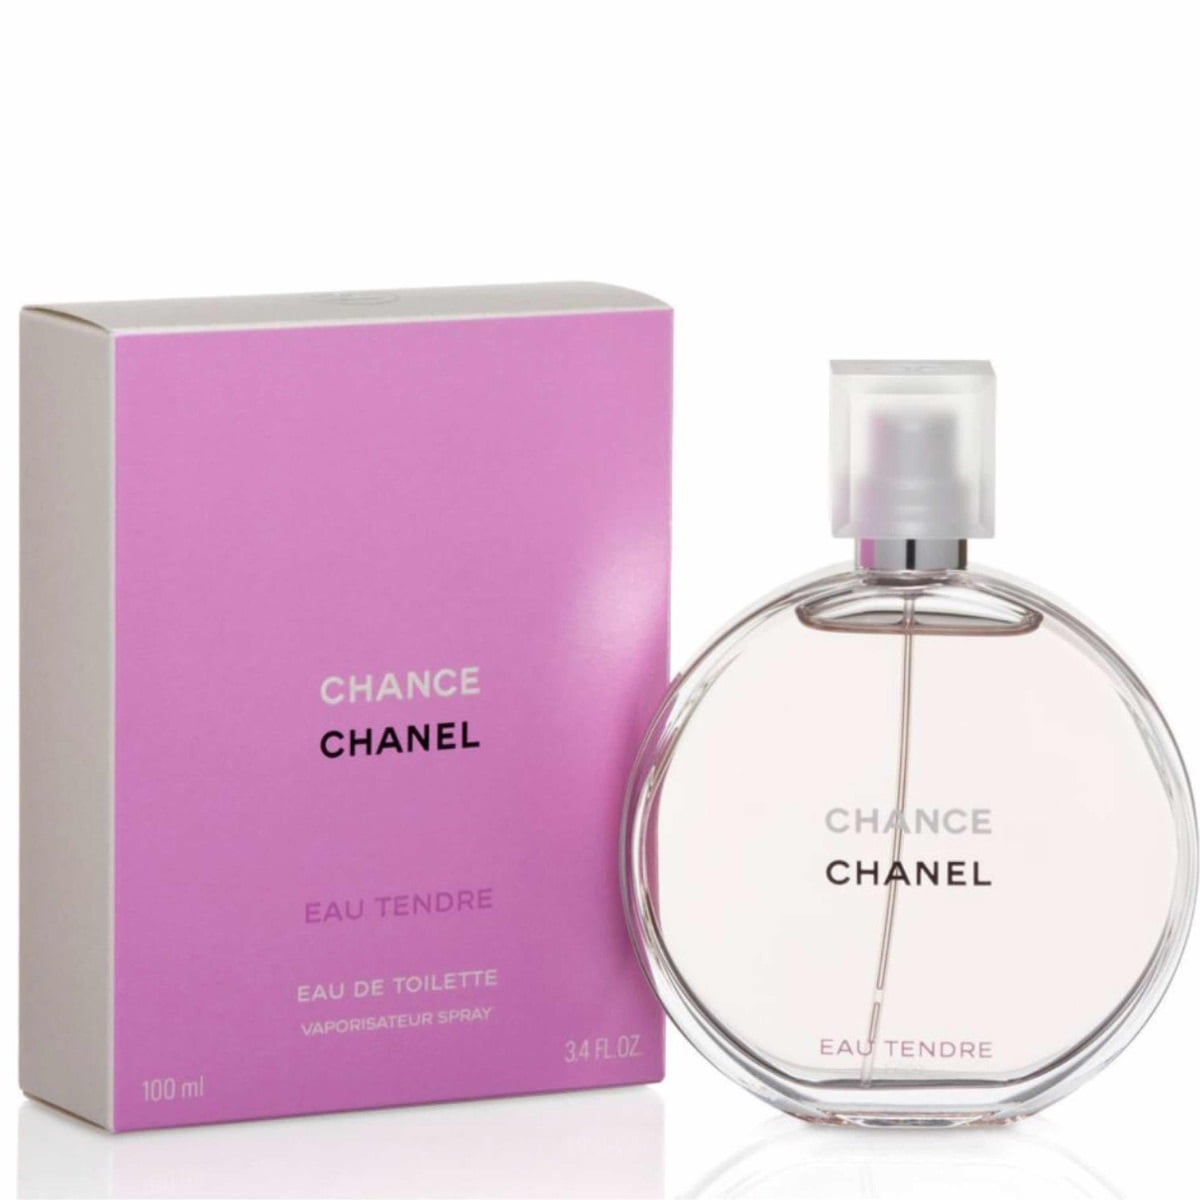 CHANCE EAU TENDRE Eau de Toilette 3.4oz Perfume EDT - Walmart.com